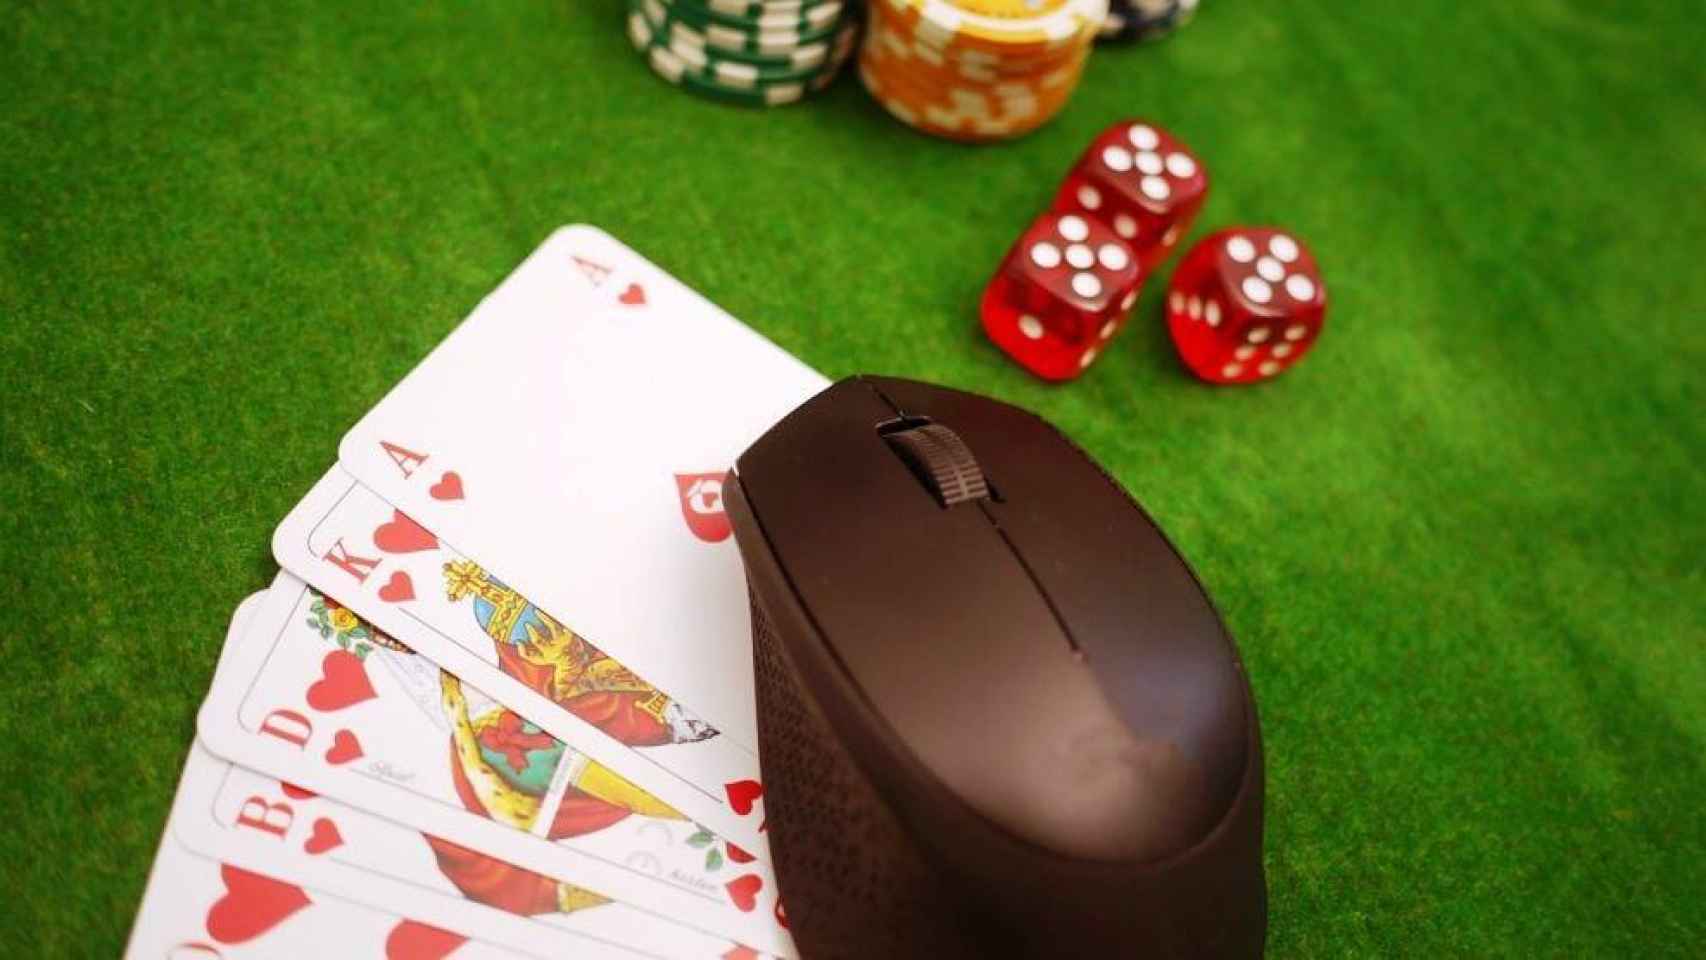 El modelo dos en uno incluye juegos de casino online y la posibilidad de realizar apuestas deportivas